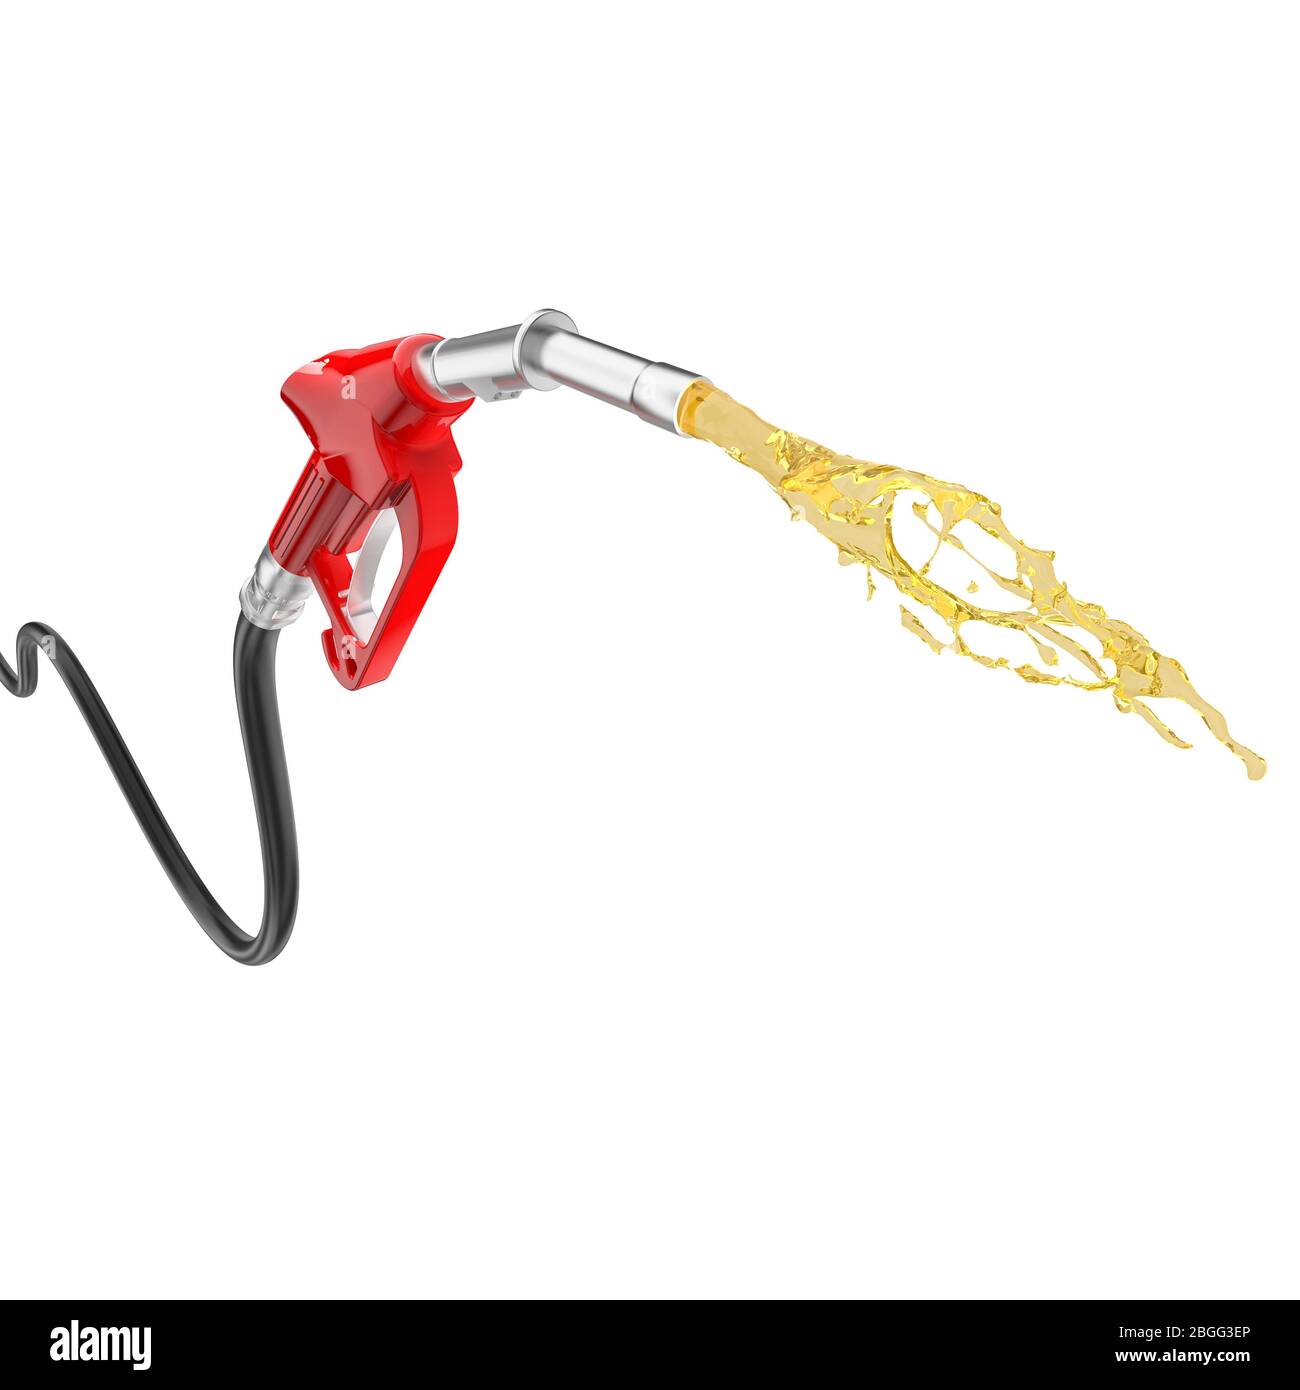 Rote Benzinpumpe, aus der Kraftstoff aukommt. Isoliert auf weiß. Niemand da. 3d-Rendering. Fossile Brennstoffe Konzept. Stockfoto